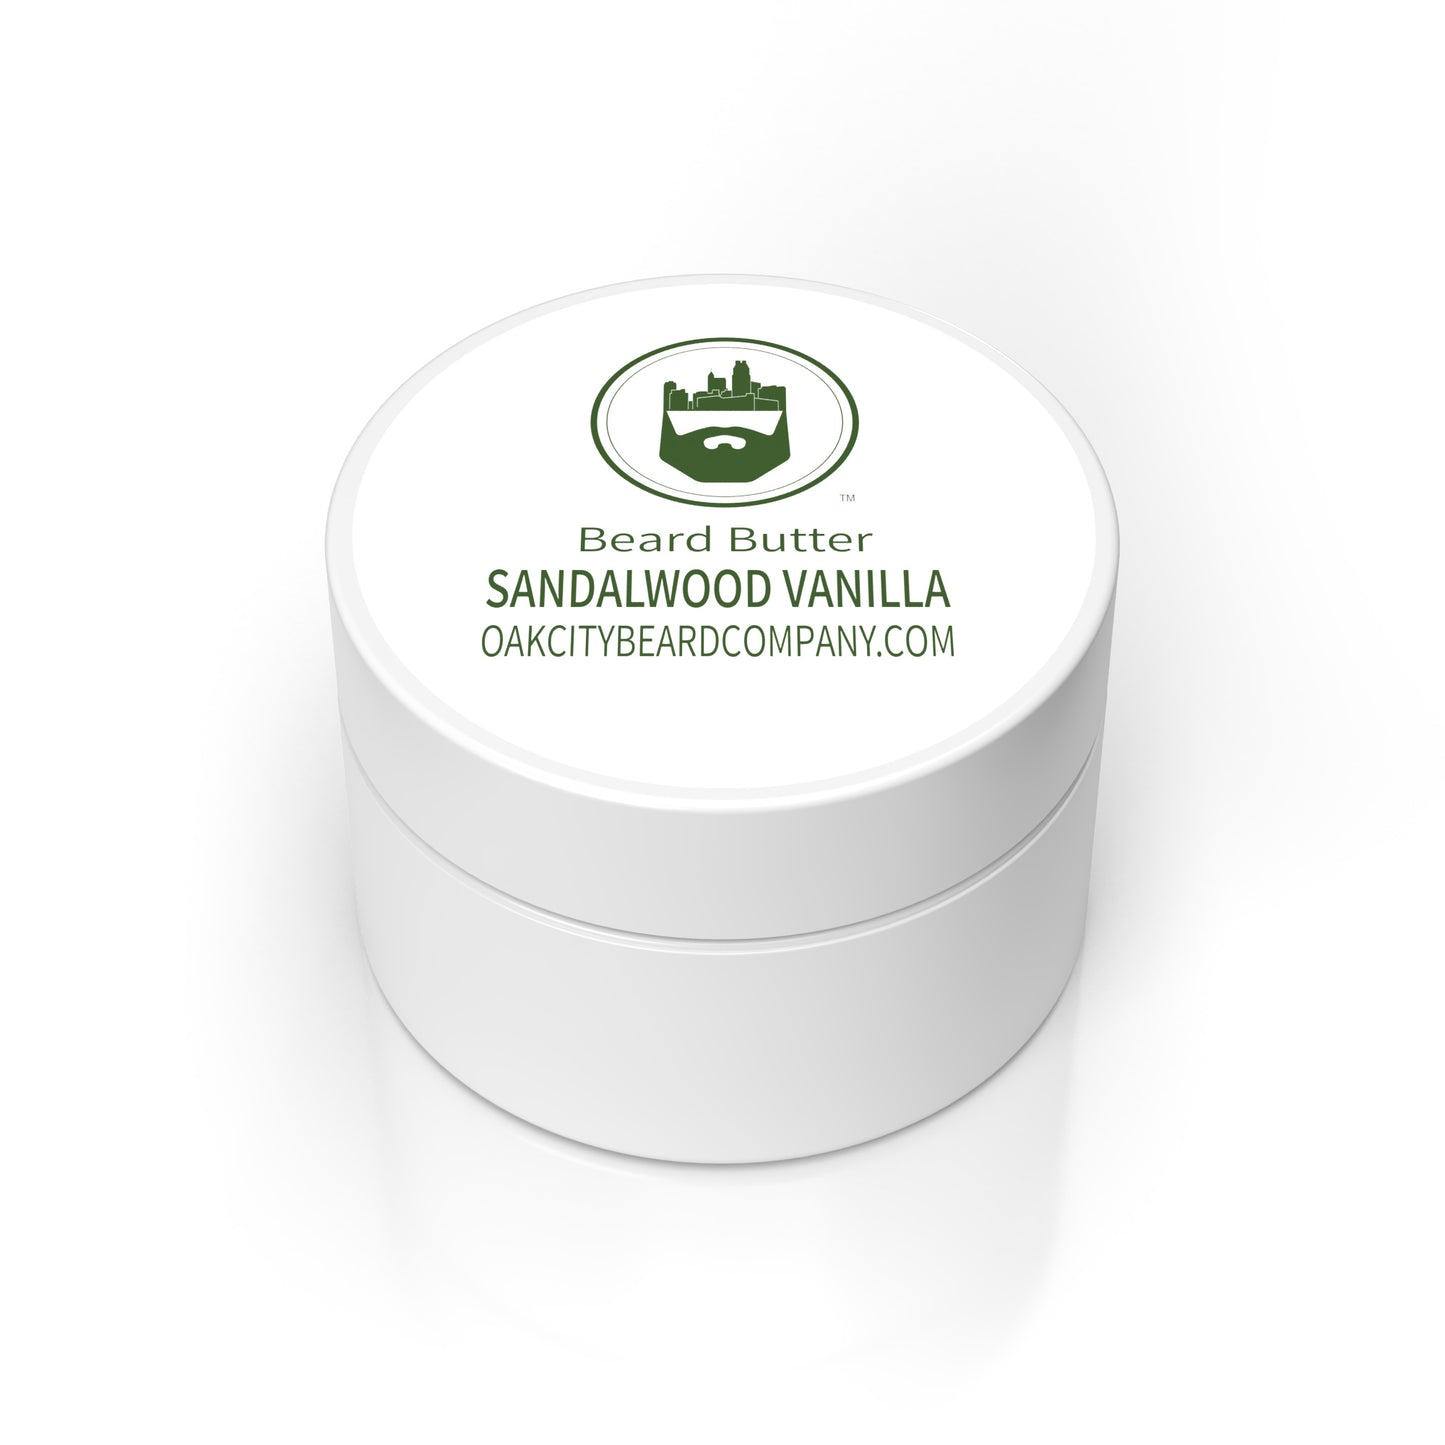 Sandalwood Vanilla (Beard Butter) by Oak City Beard Company